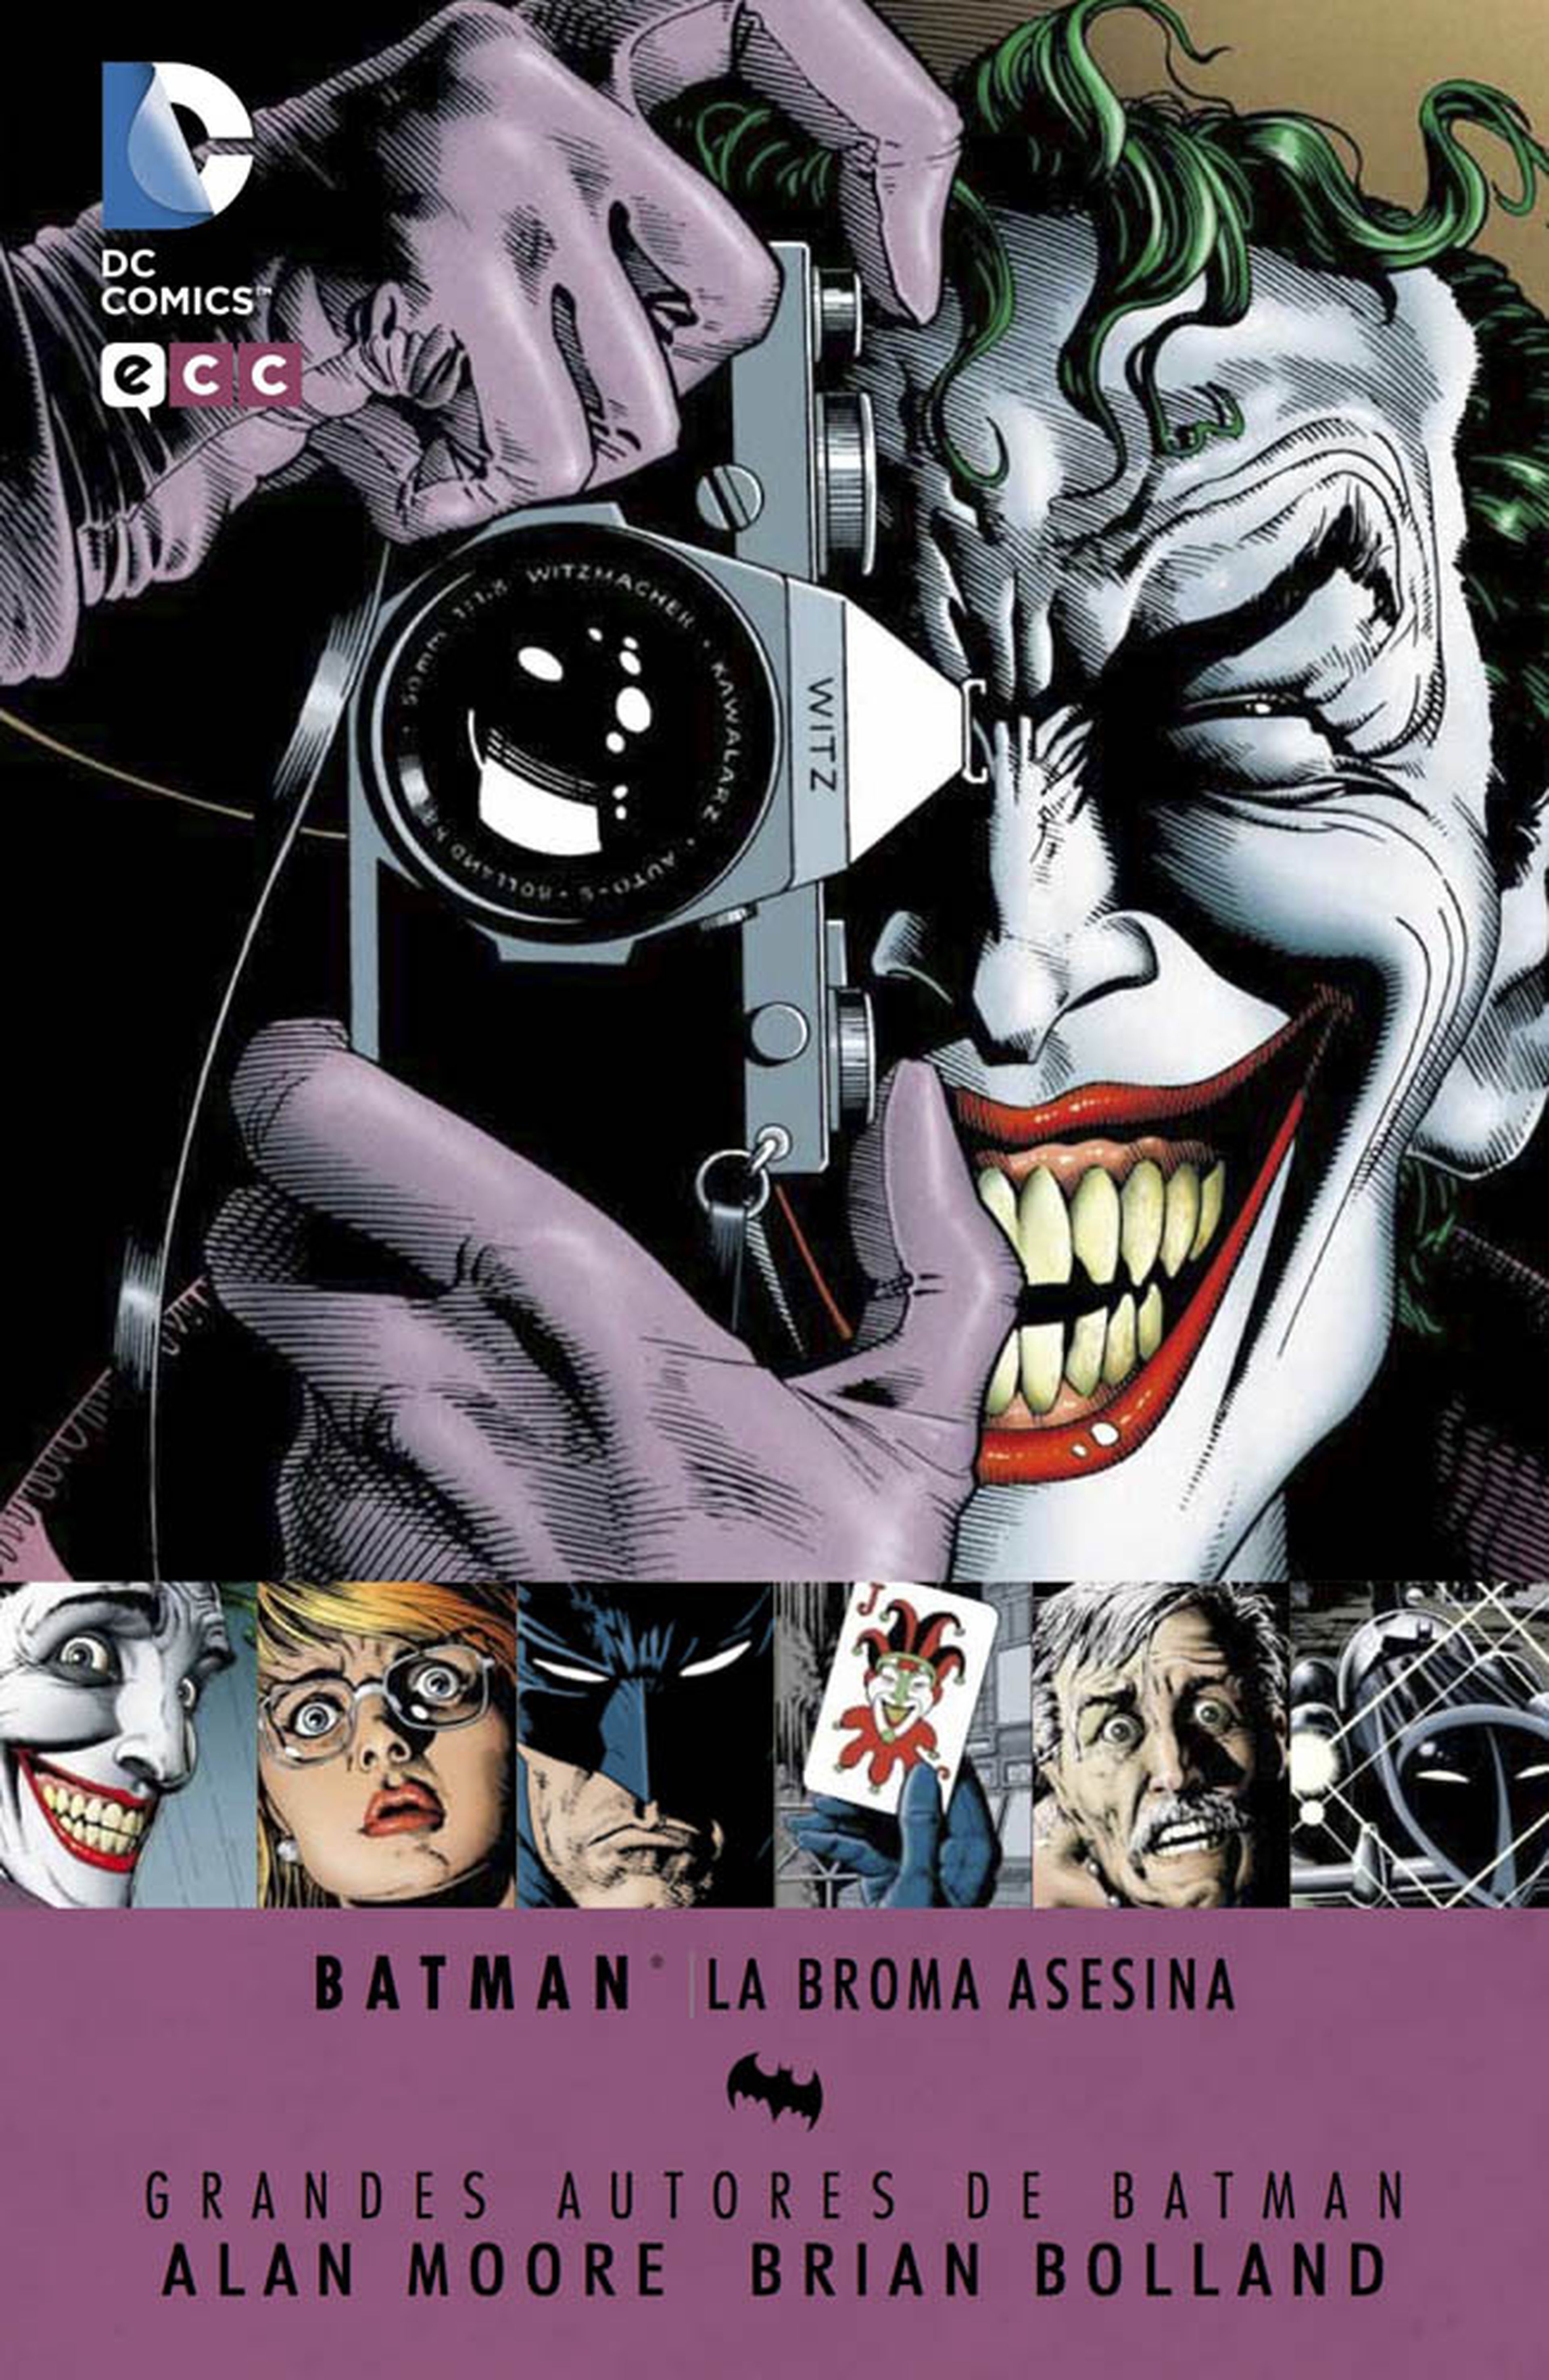 Escuadrón Suicida: Cómo Jared Leto se convierte en el Joker